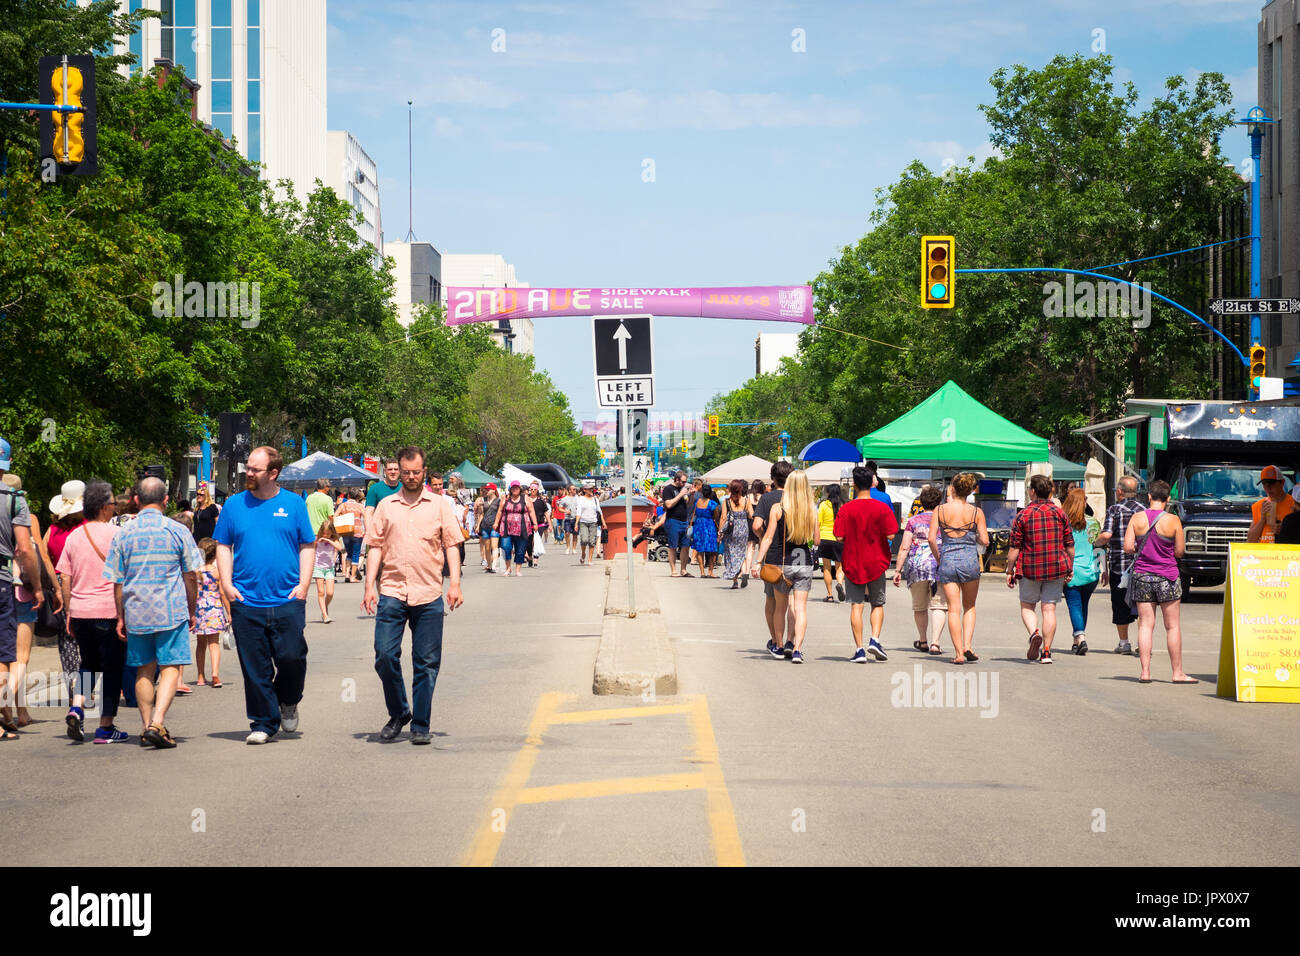 Il 2° Avenue marciapiede in vendita in Saskatoon, Saskatchewan, Canada. Una tradizione di Saskatoon, marciapiede vendita ha segnato il suo 41mo anniversario nel 2017. Foto Stock